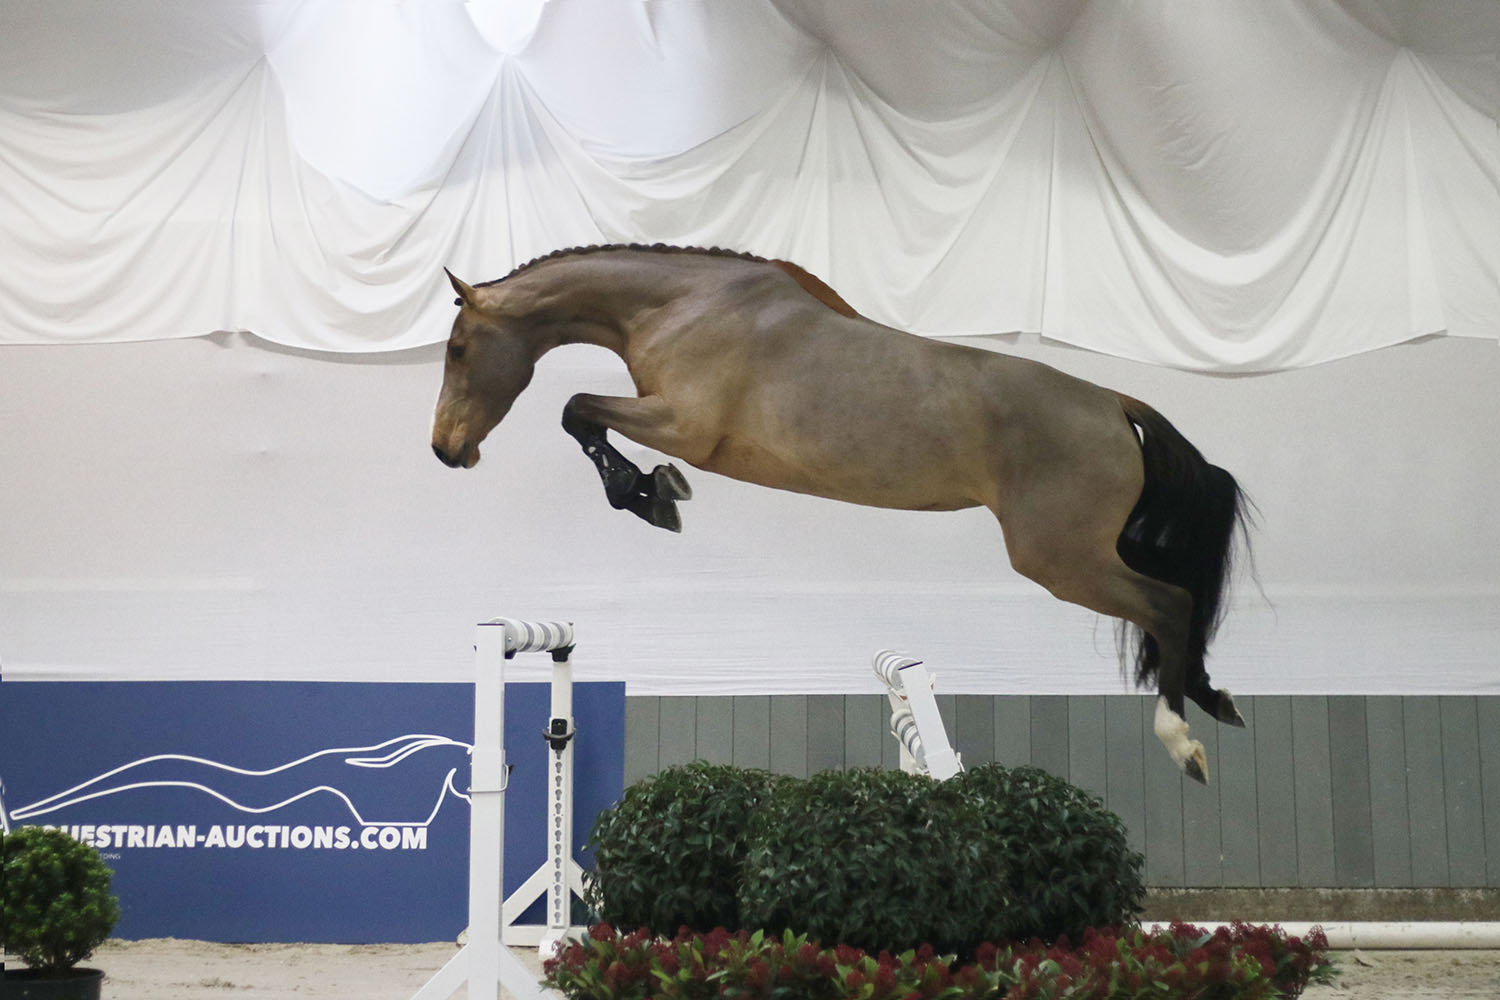 Equestrian-Auctions klaar voor LIVE & ONLINE veiling met jonge springpaarden onder het zadel